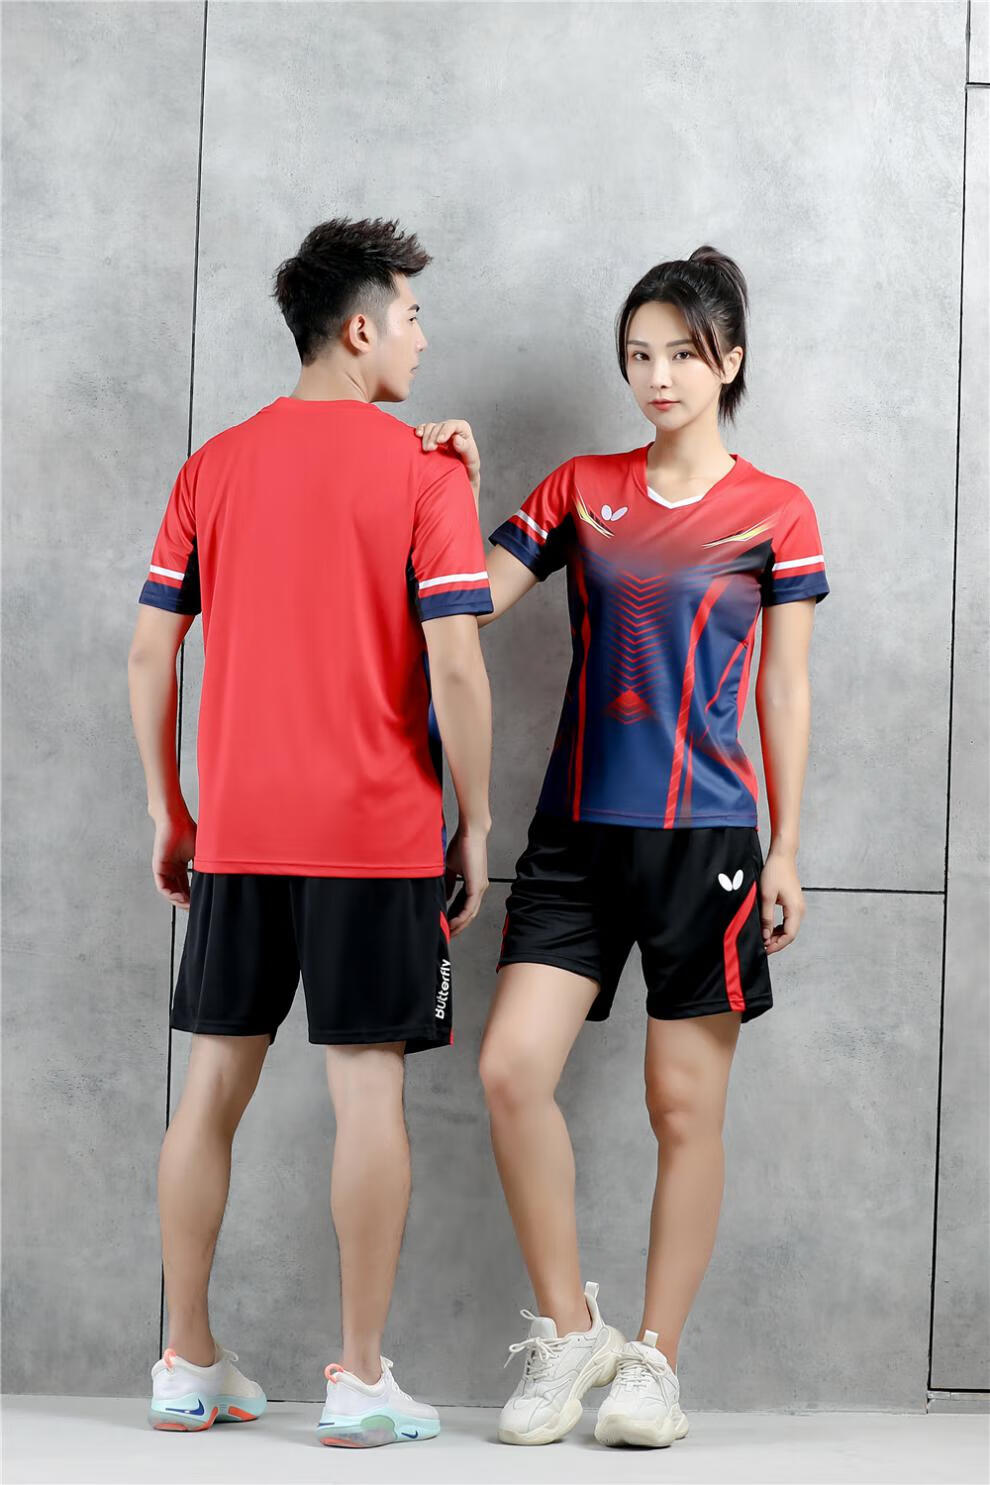 新款蝴·蝶乒乓球服套装男女速干排汗比赛训练球衣团购运动队服印字